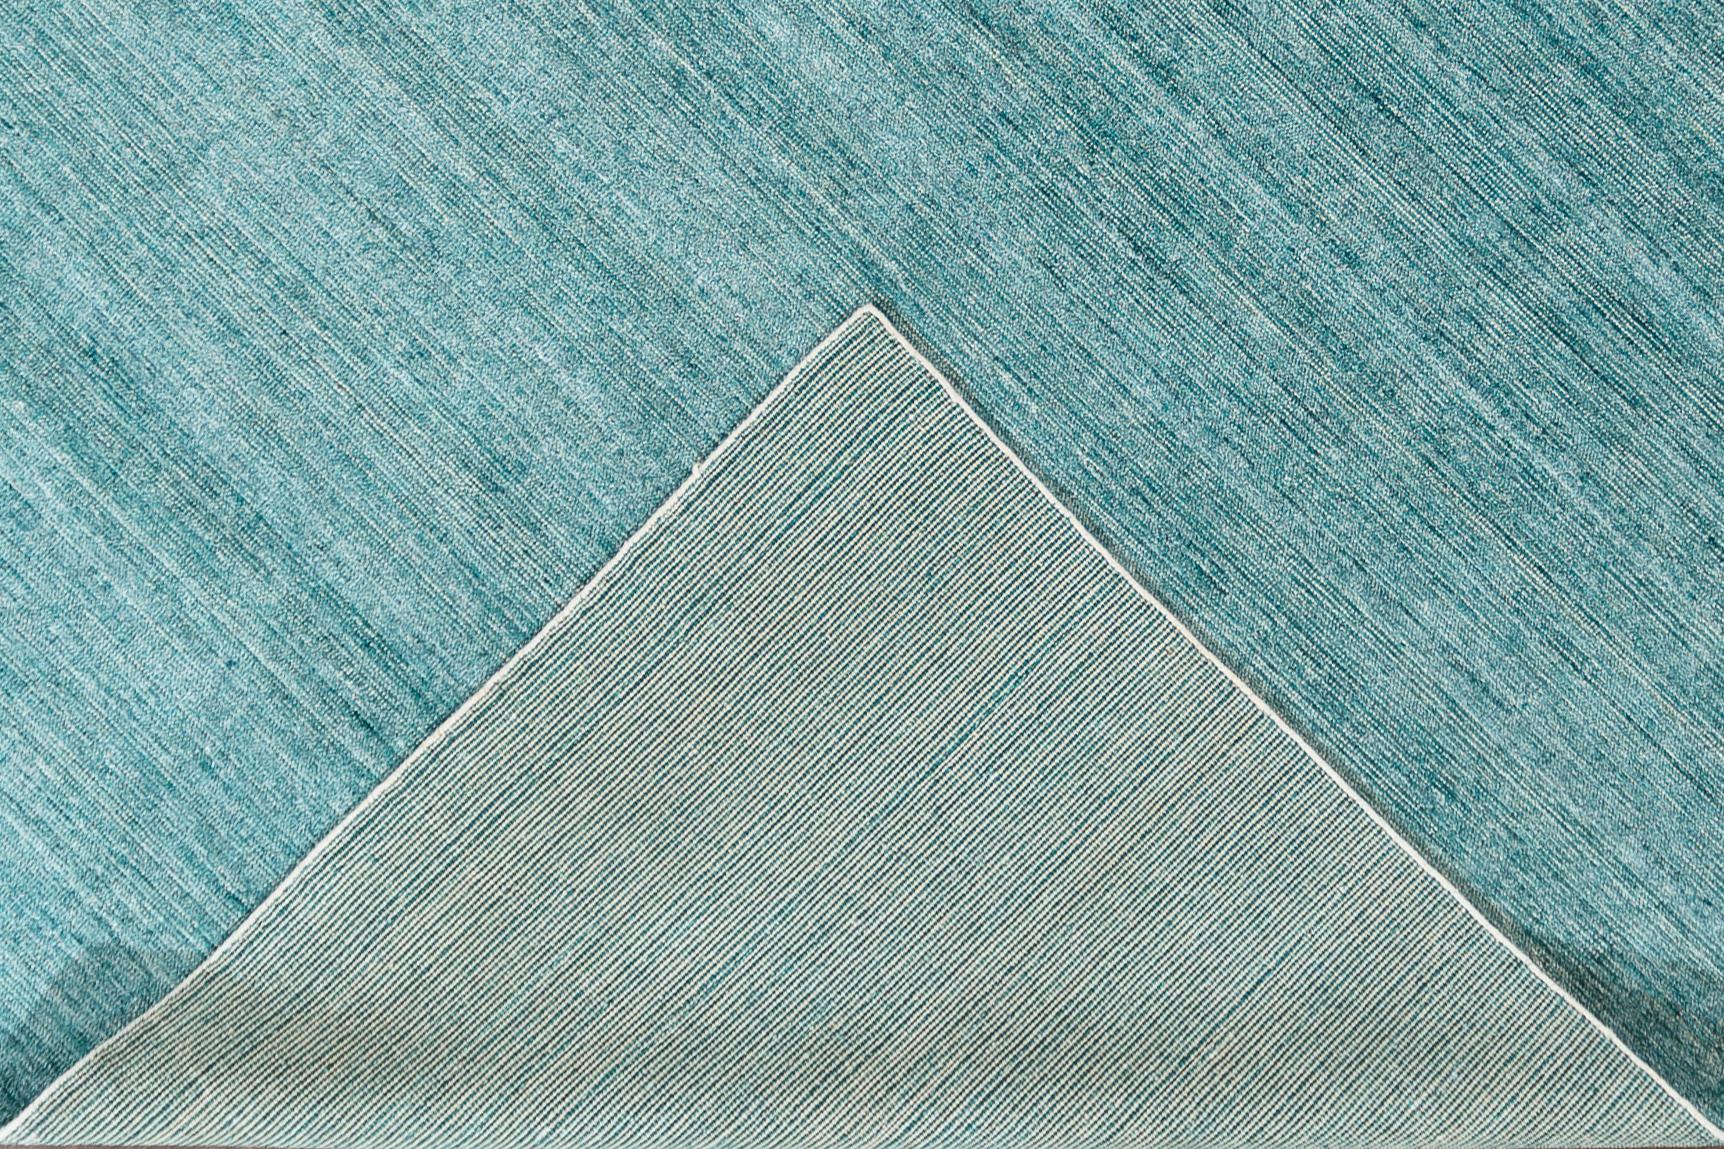 Magnifique tapis bohème indien moderne en bambou et soie, fait à la main, avec un champ sarcelle et ivoire. Ce tapis de la collection Boho présente un motif uni sur toute sa surface.

Ce tapis mesure : 9'0